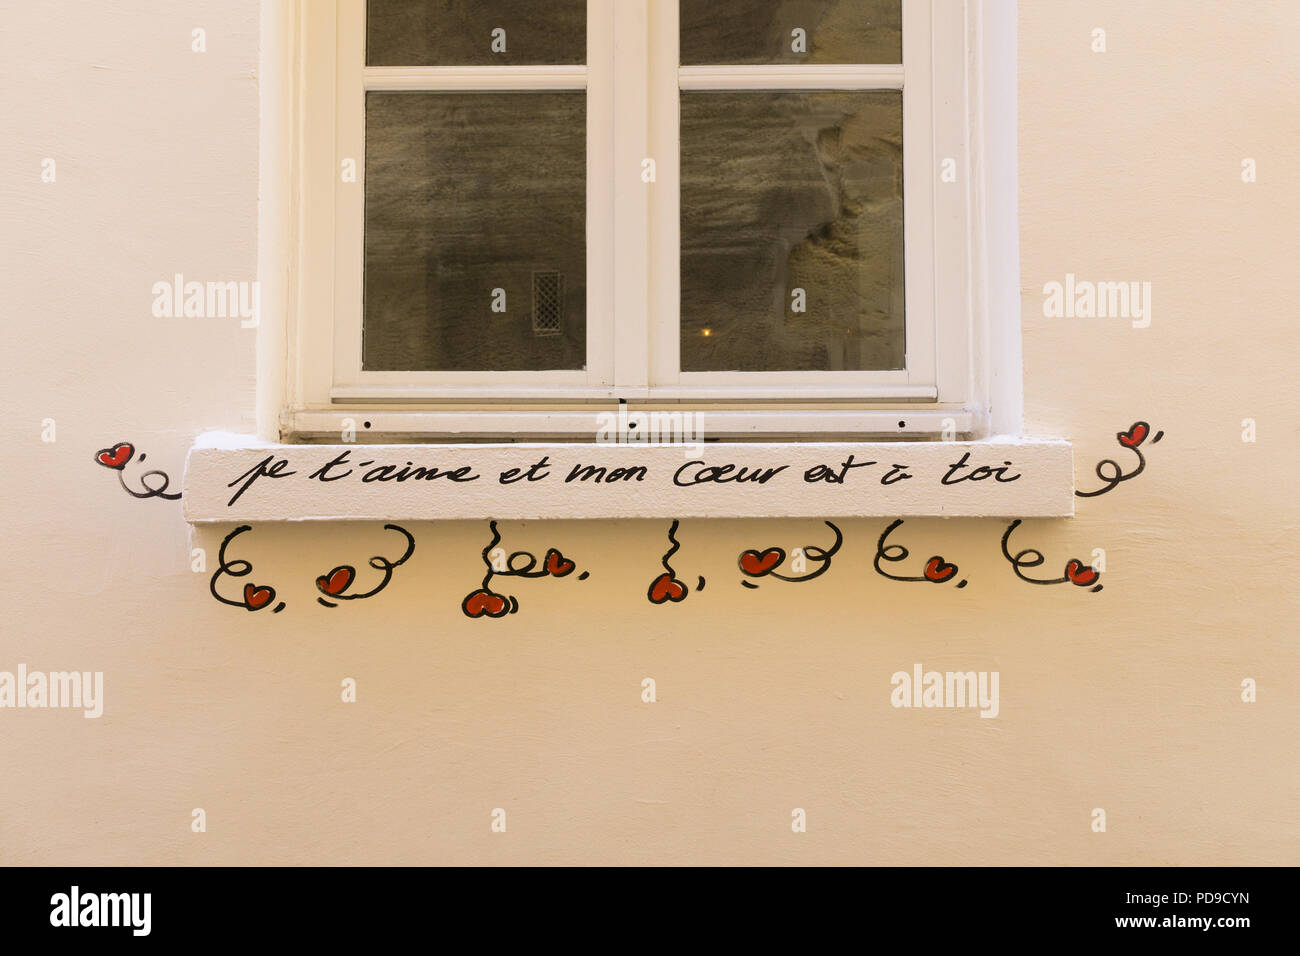 Liebe Nachricht in Französisch - Fensterbank mit street art Liebe Nachricht in französischer Sprache, Paris, Frankreich, Europa. Stockfoto